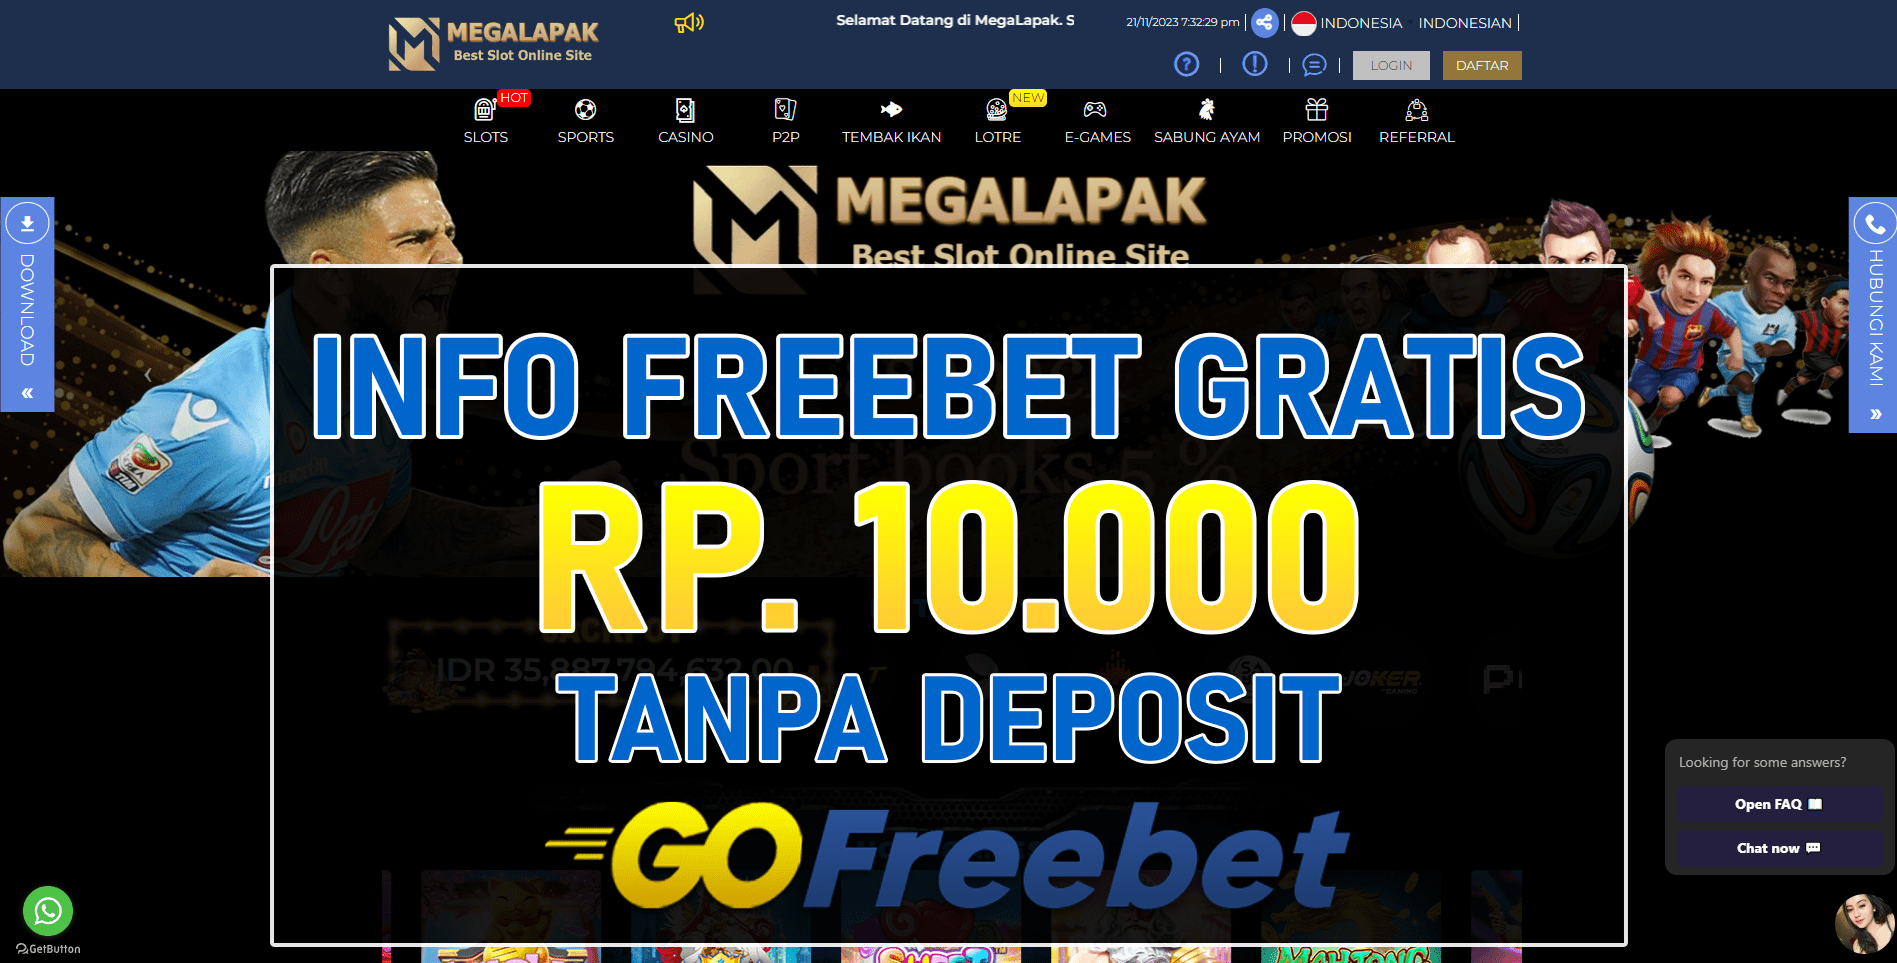 Megalapak Freebet Gratis Rp 10.000 Tanpa Deposit